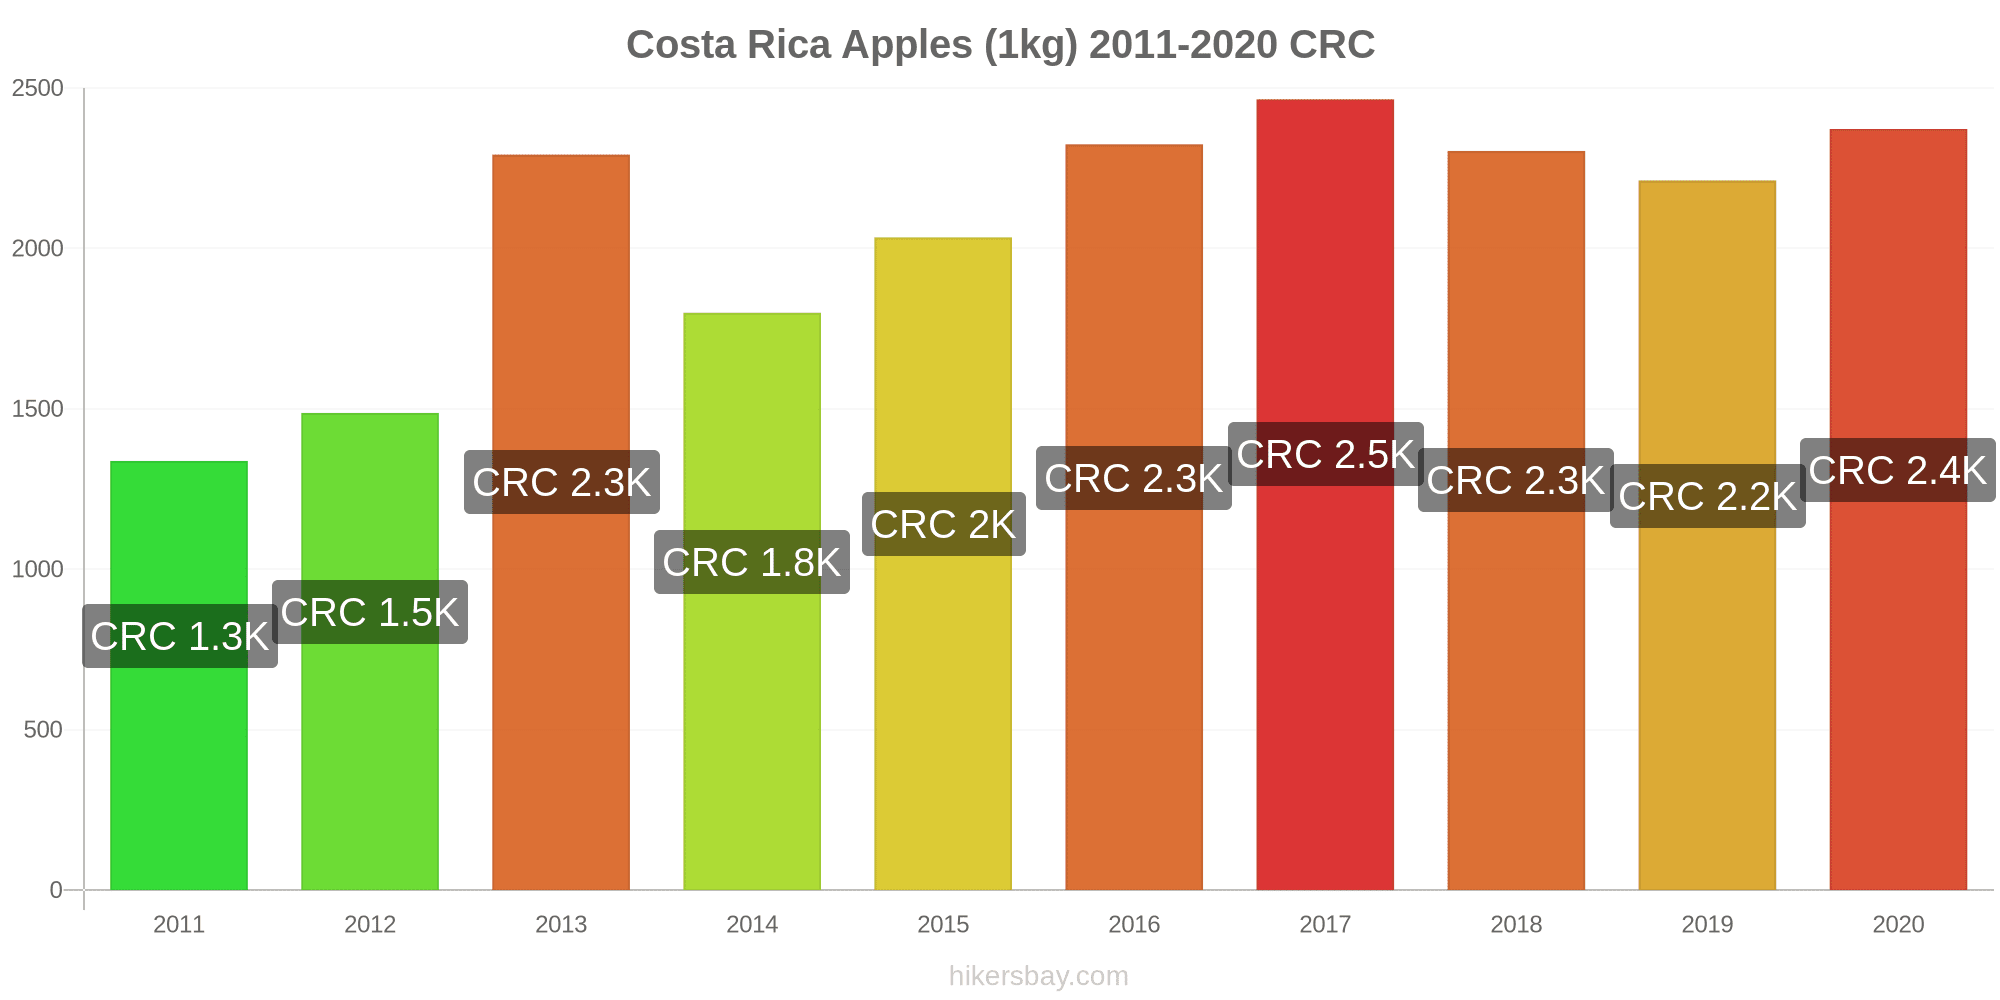 Quelle est la meilleure période pour partir au Costa Rica ?